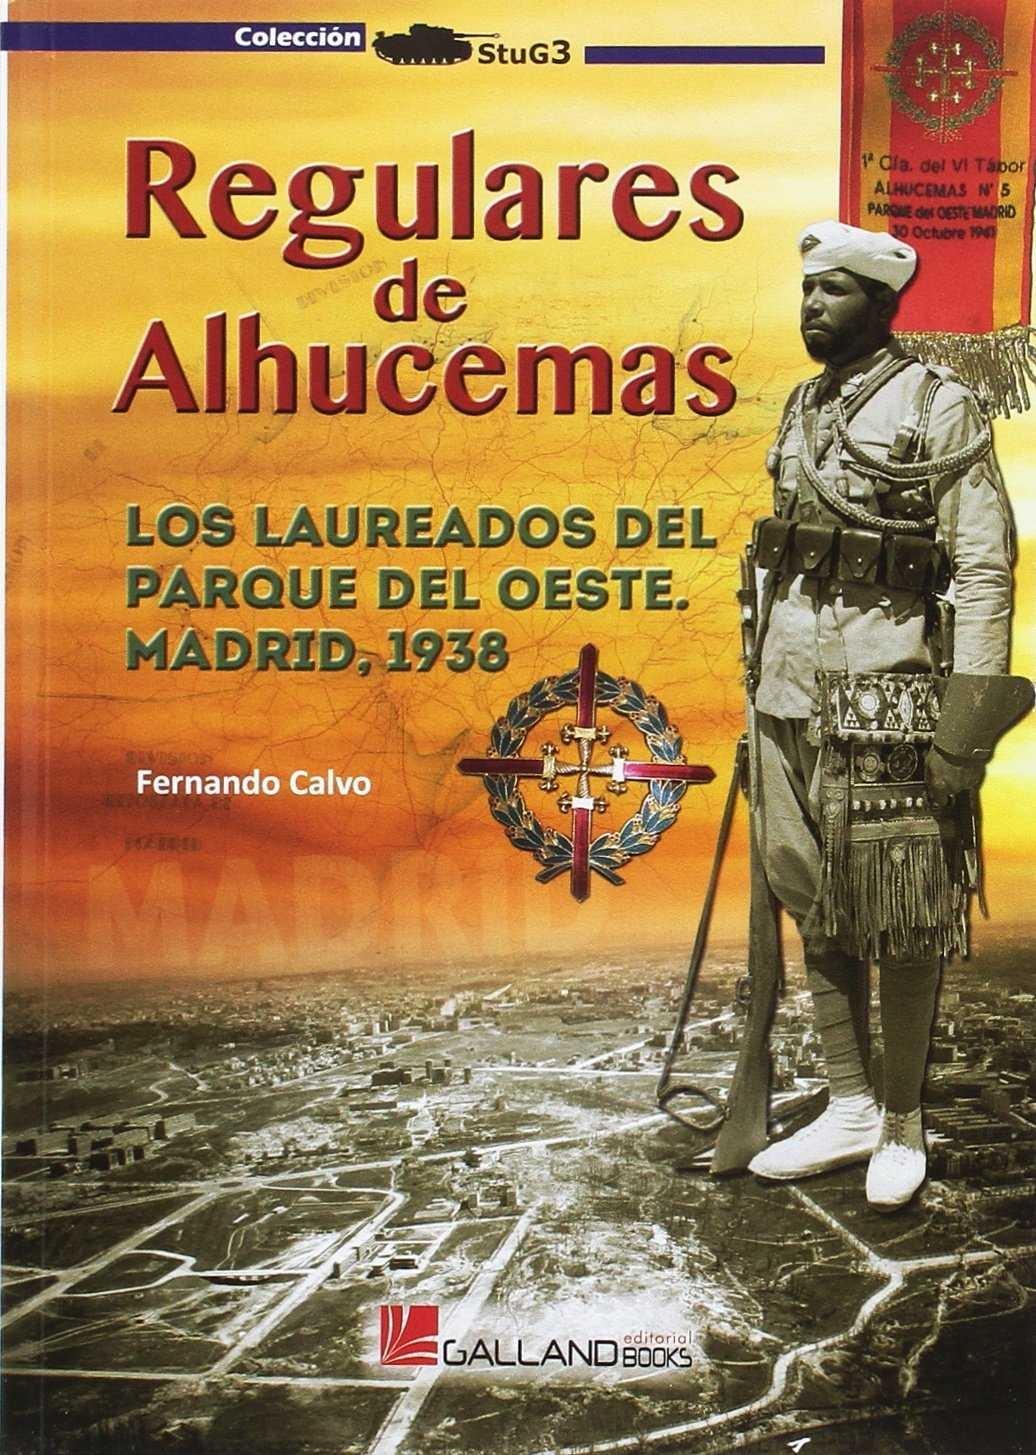 Regulares de Alhucemas "Los Laureados del Parque del Oeste de Madrid, 1938."